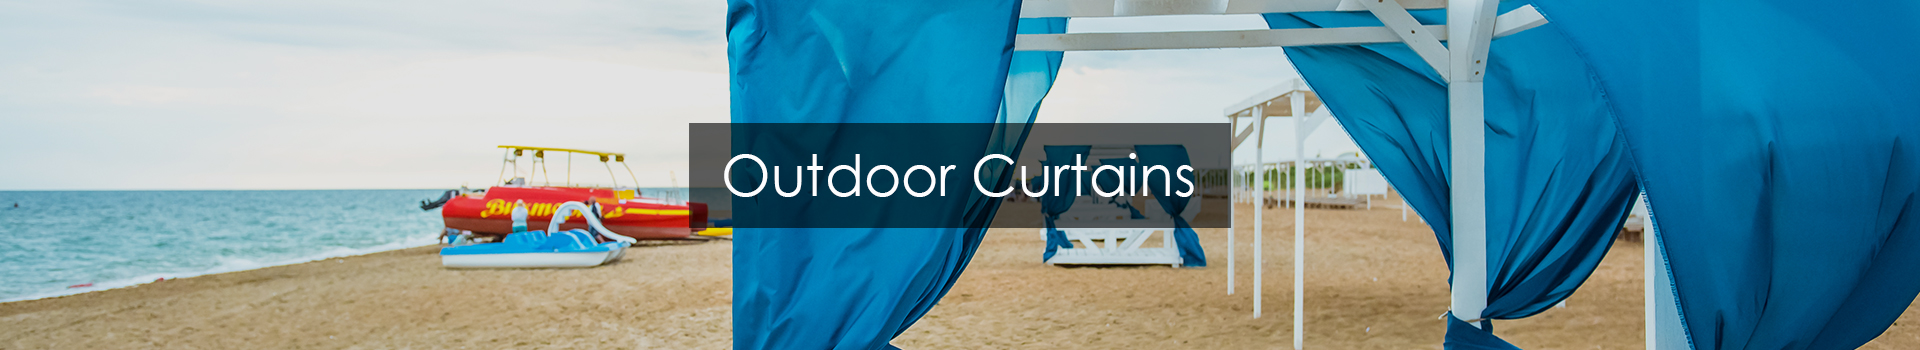 Outdoor Curtains in Dubai & Abu Dhabi